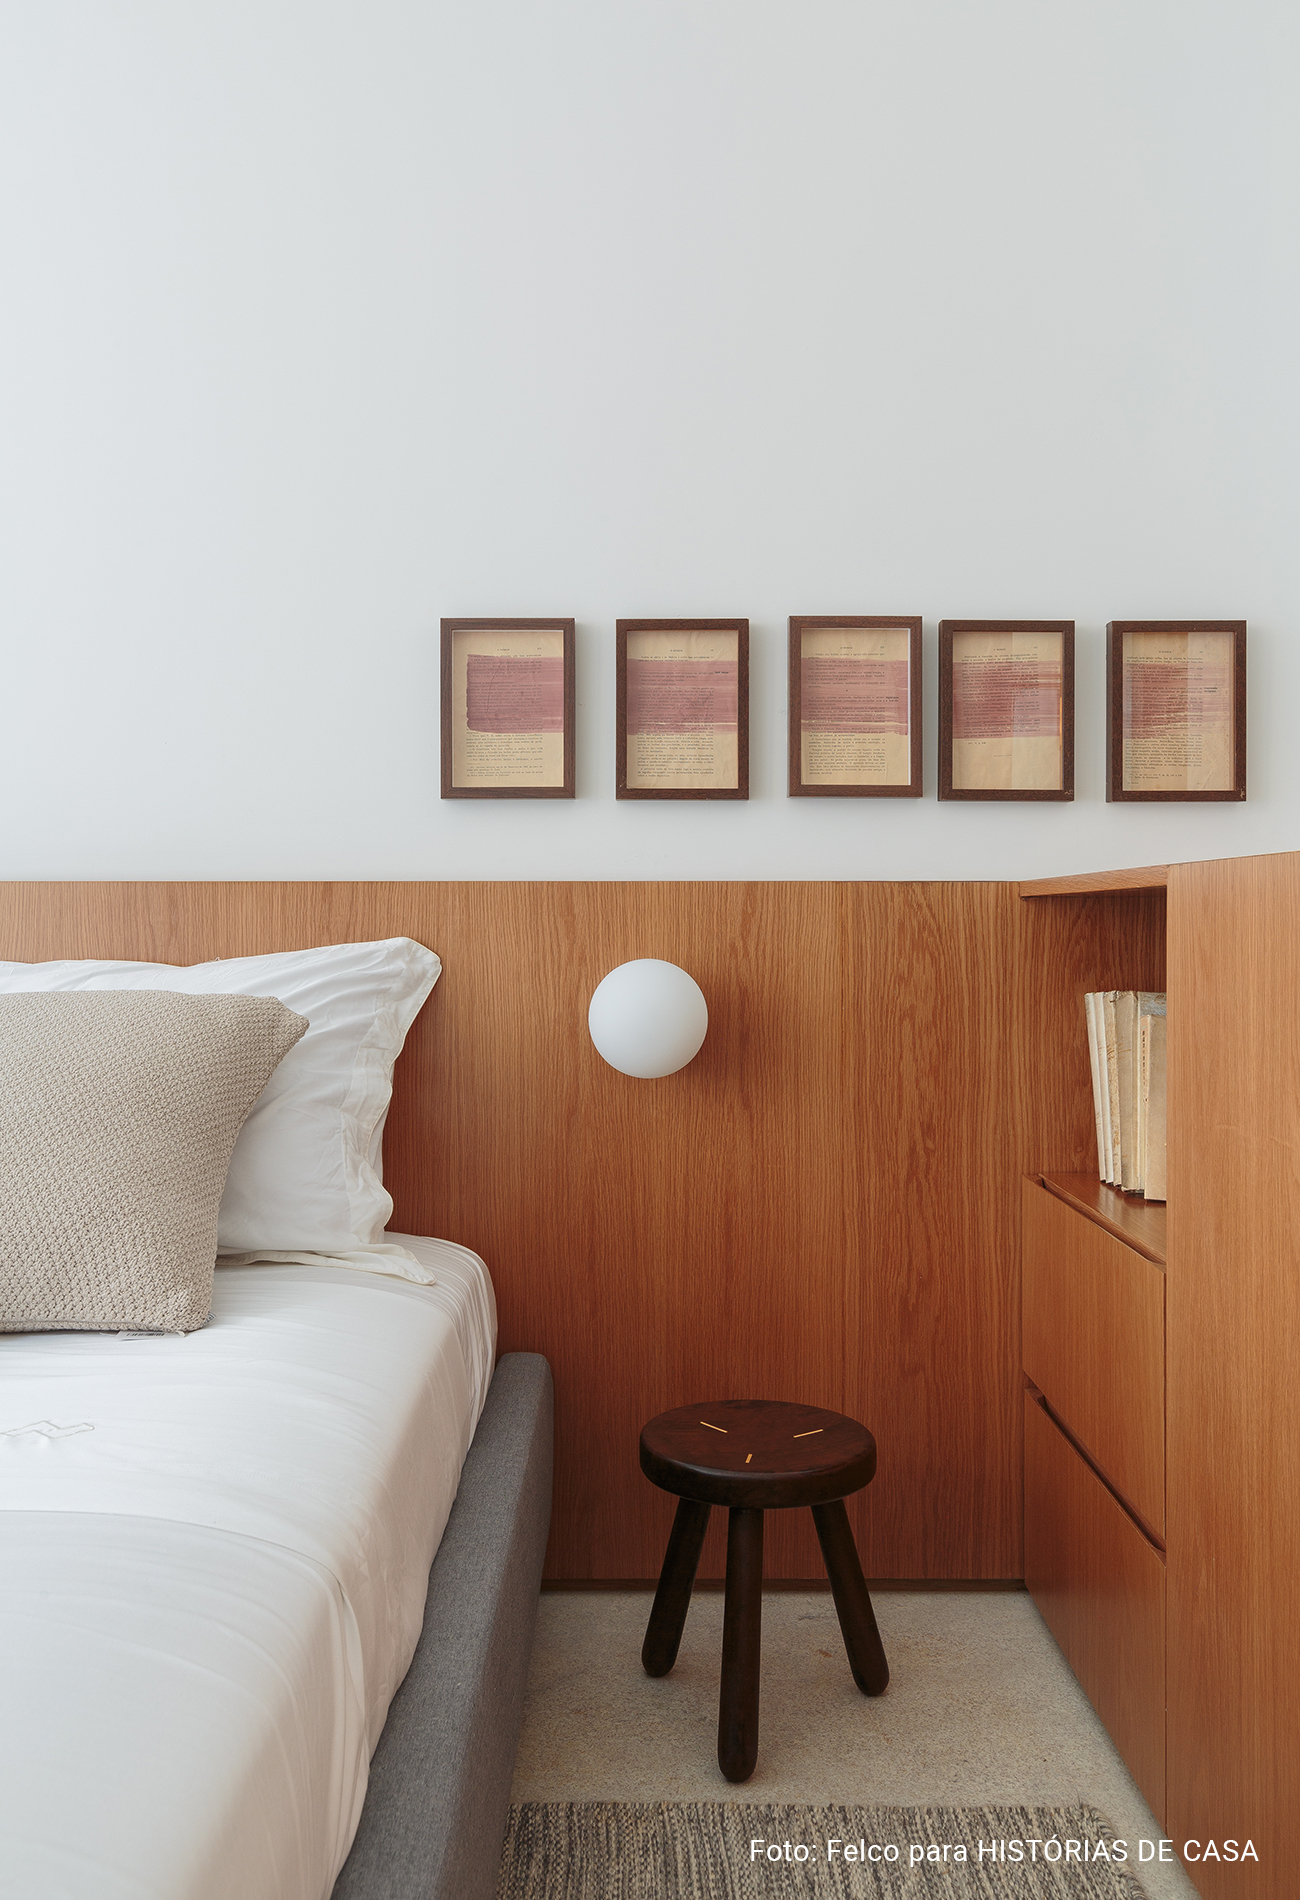 Decorado Oscar da Idea!Zarvos tem decoração minimalista com tons neutros e sala ampla.